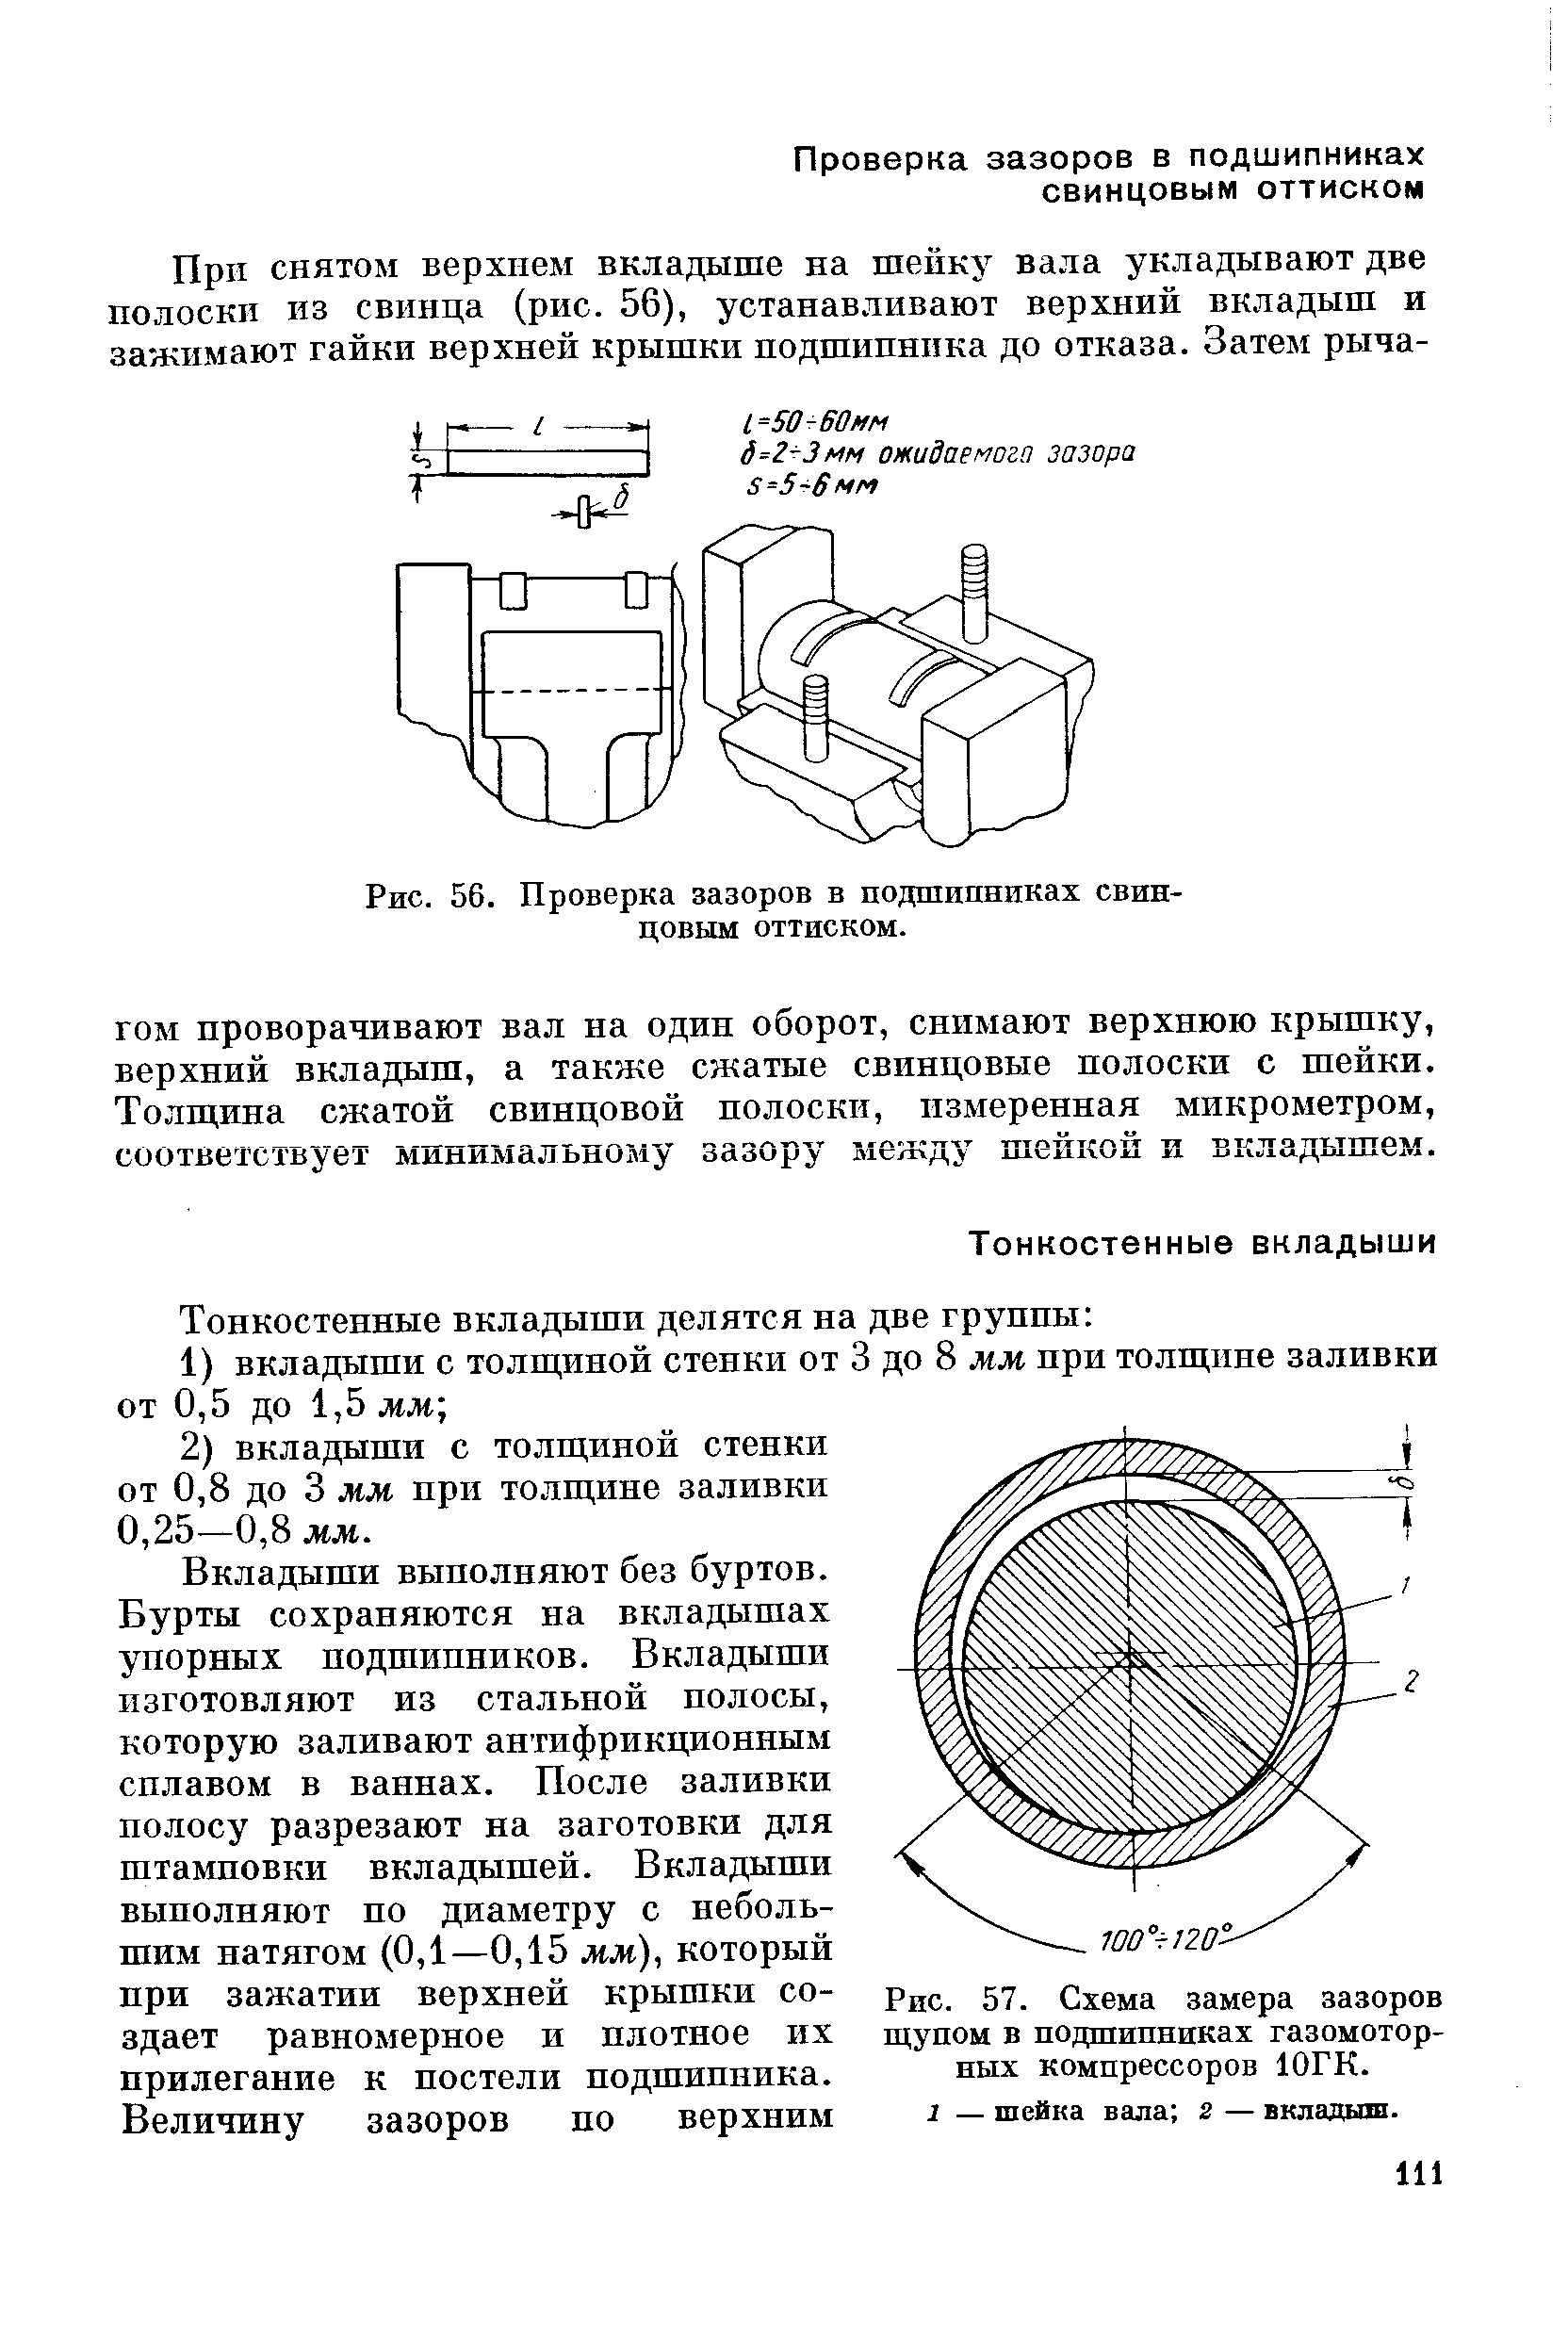 Рис. 57. Схема замера зазоров щупом в подшипниках газомоторных компрессоров ЮГК.
